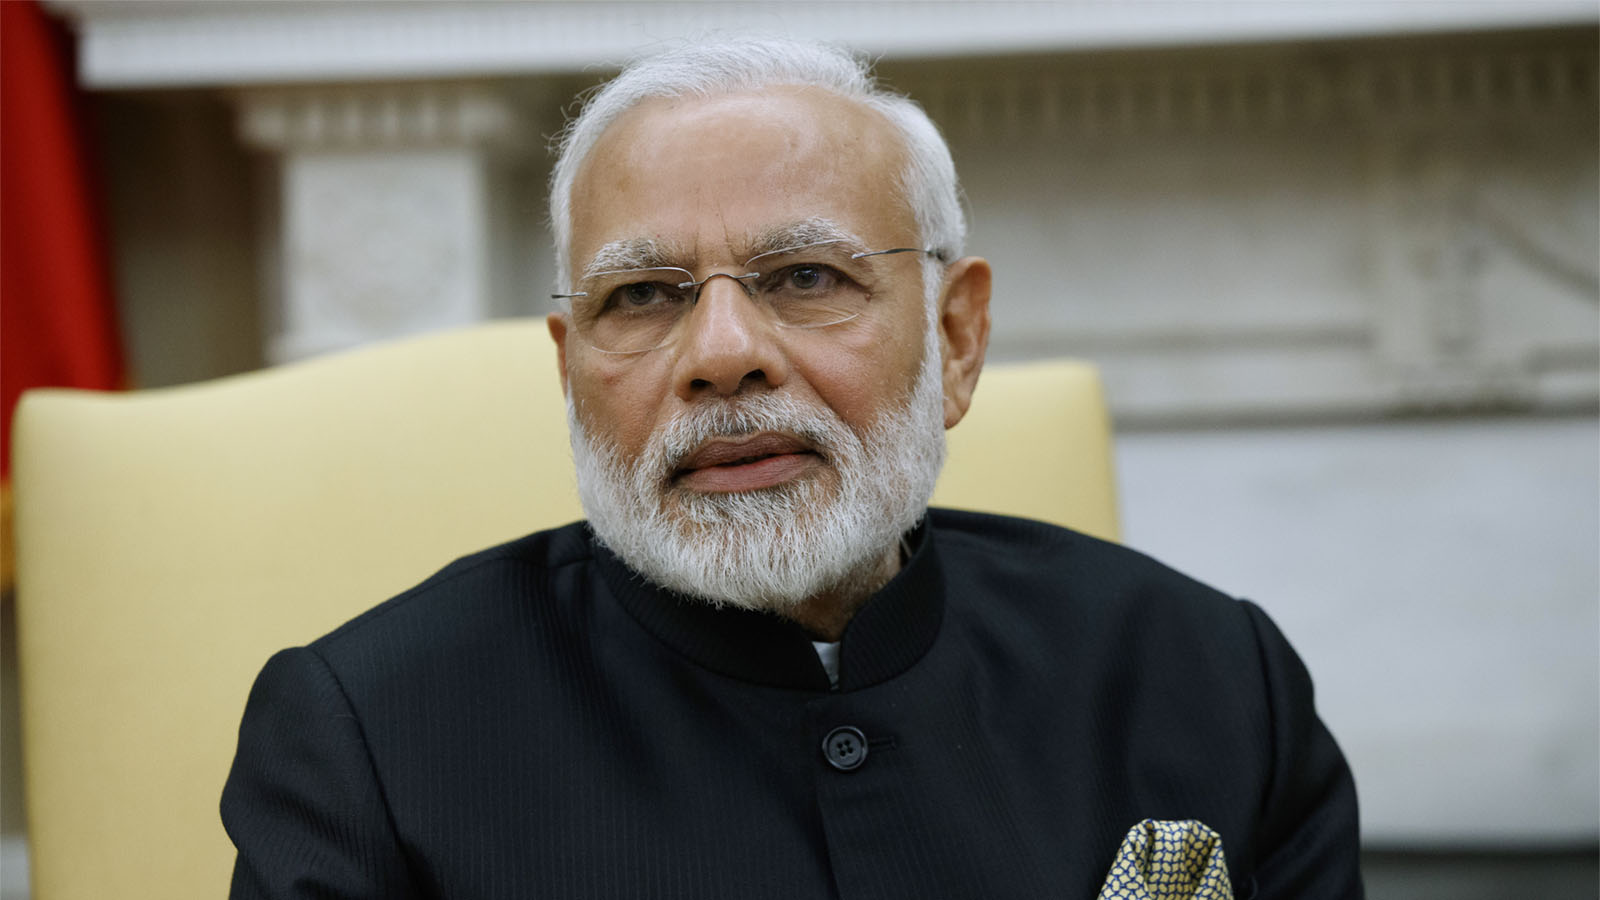 ראש ממשלת הודו נרנדה מודי בעת ביקורו בארצות הברית בשבוע שעבר (AP Photo/Evan Vucci)